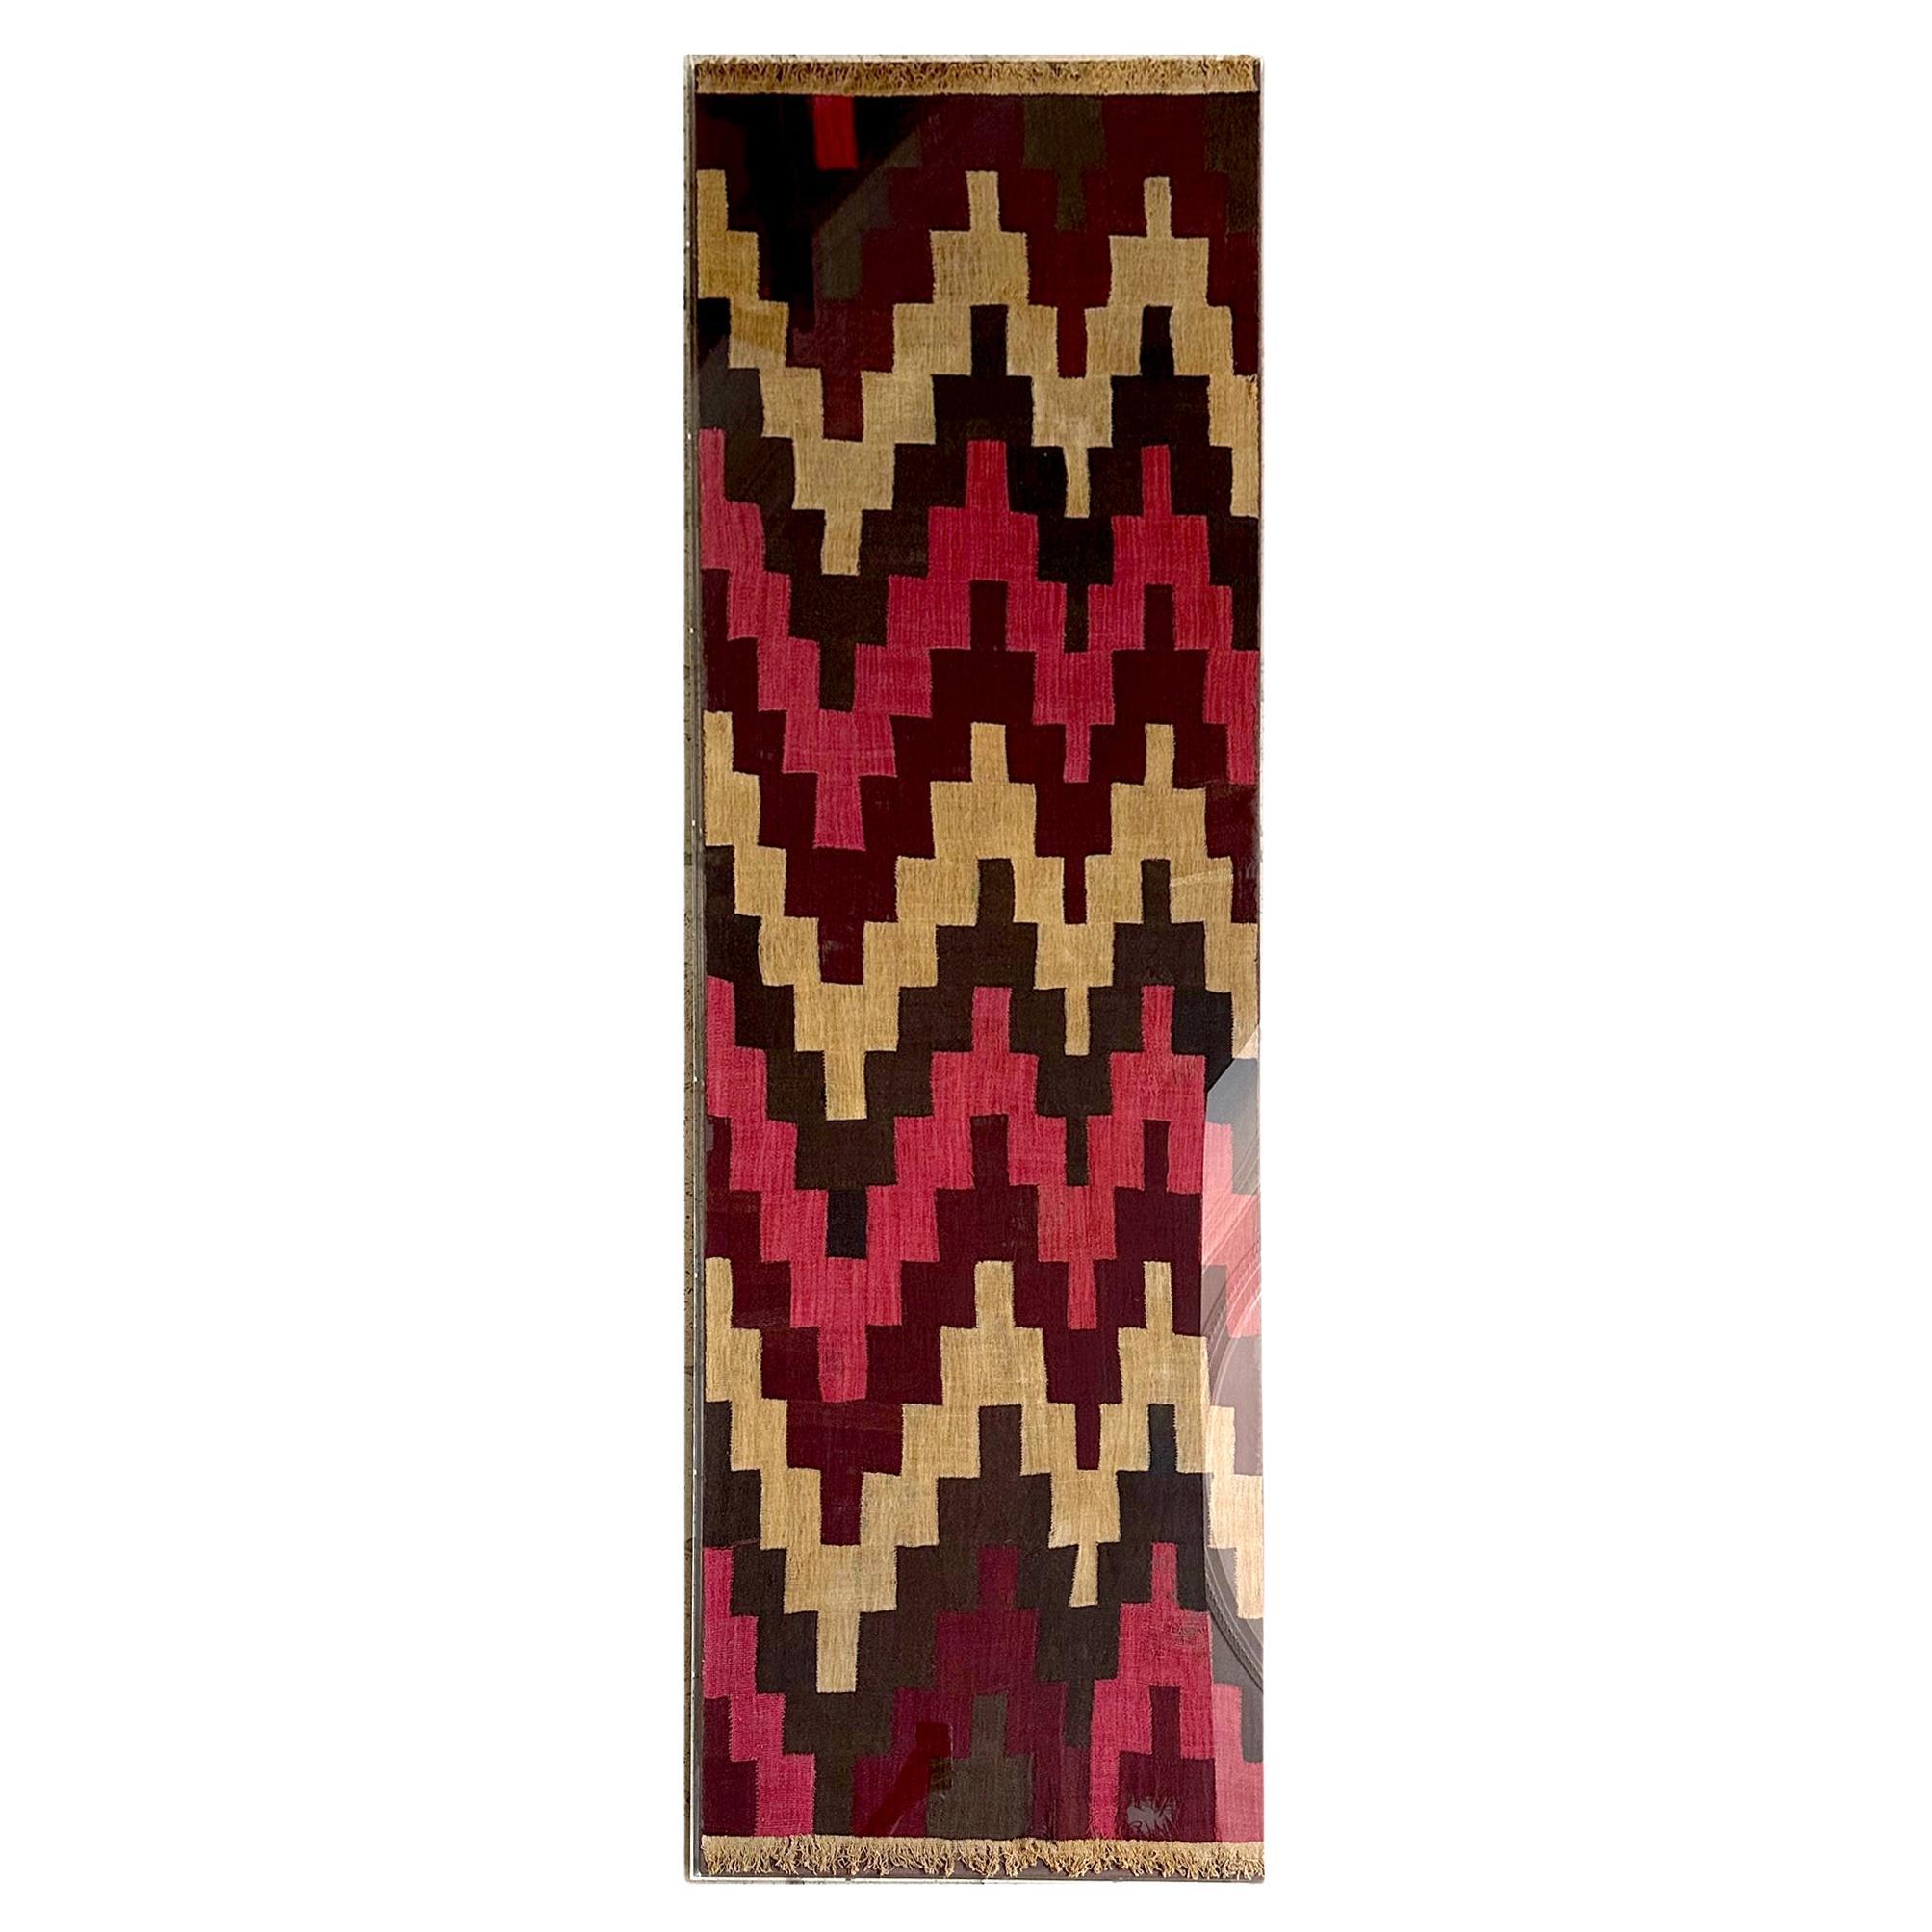 Grand panneau de textile Nazca encadré au design géométrique